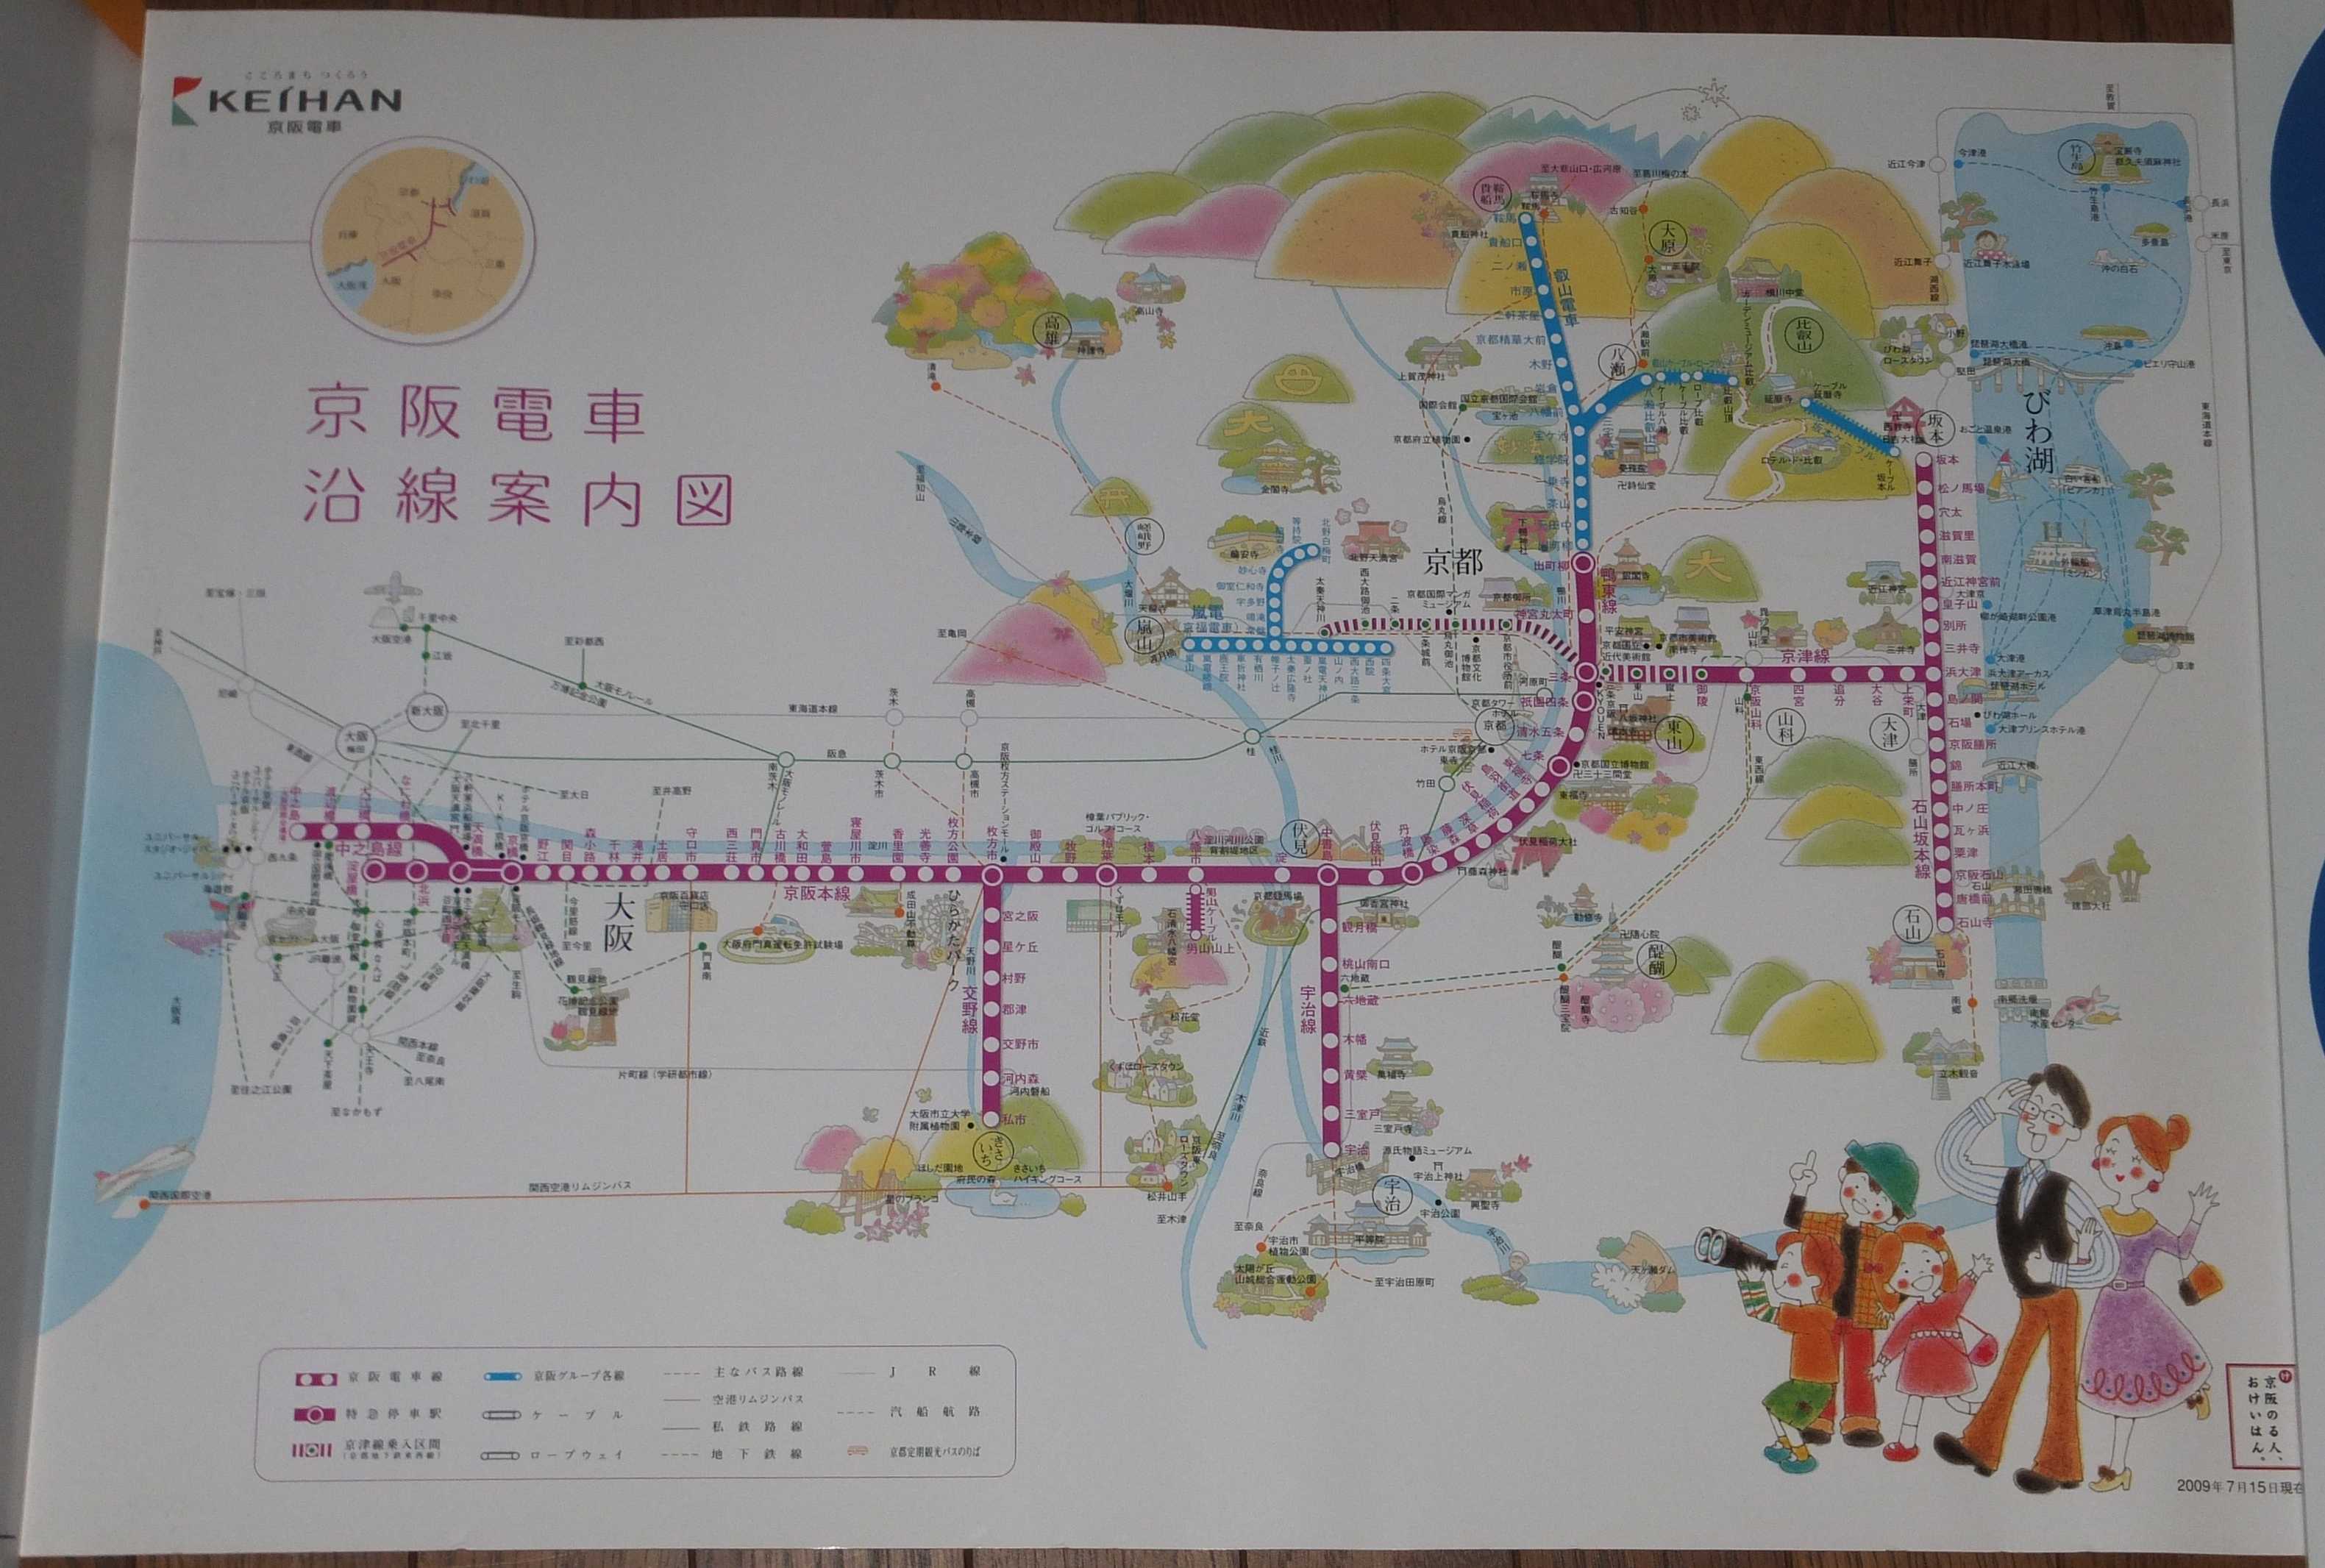 路線図の変遷 京阪電気鉄道 19年1月12日追記 画像追加 Icoca飼いました